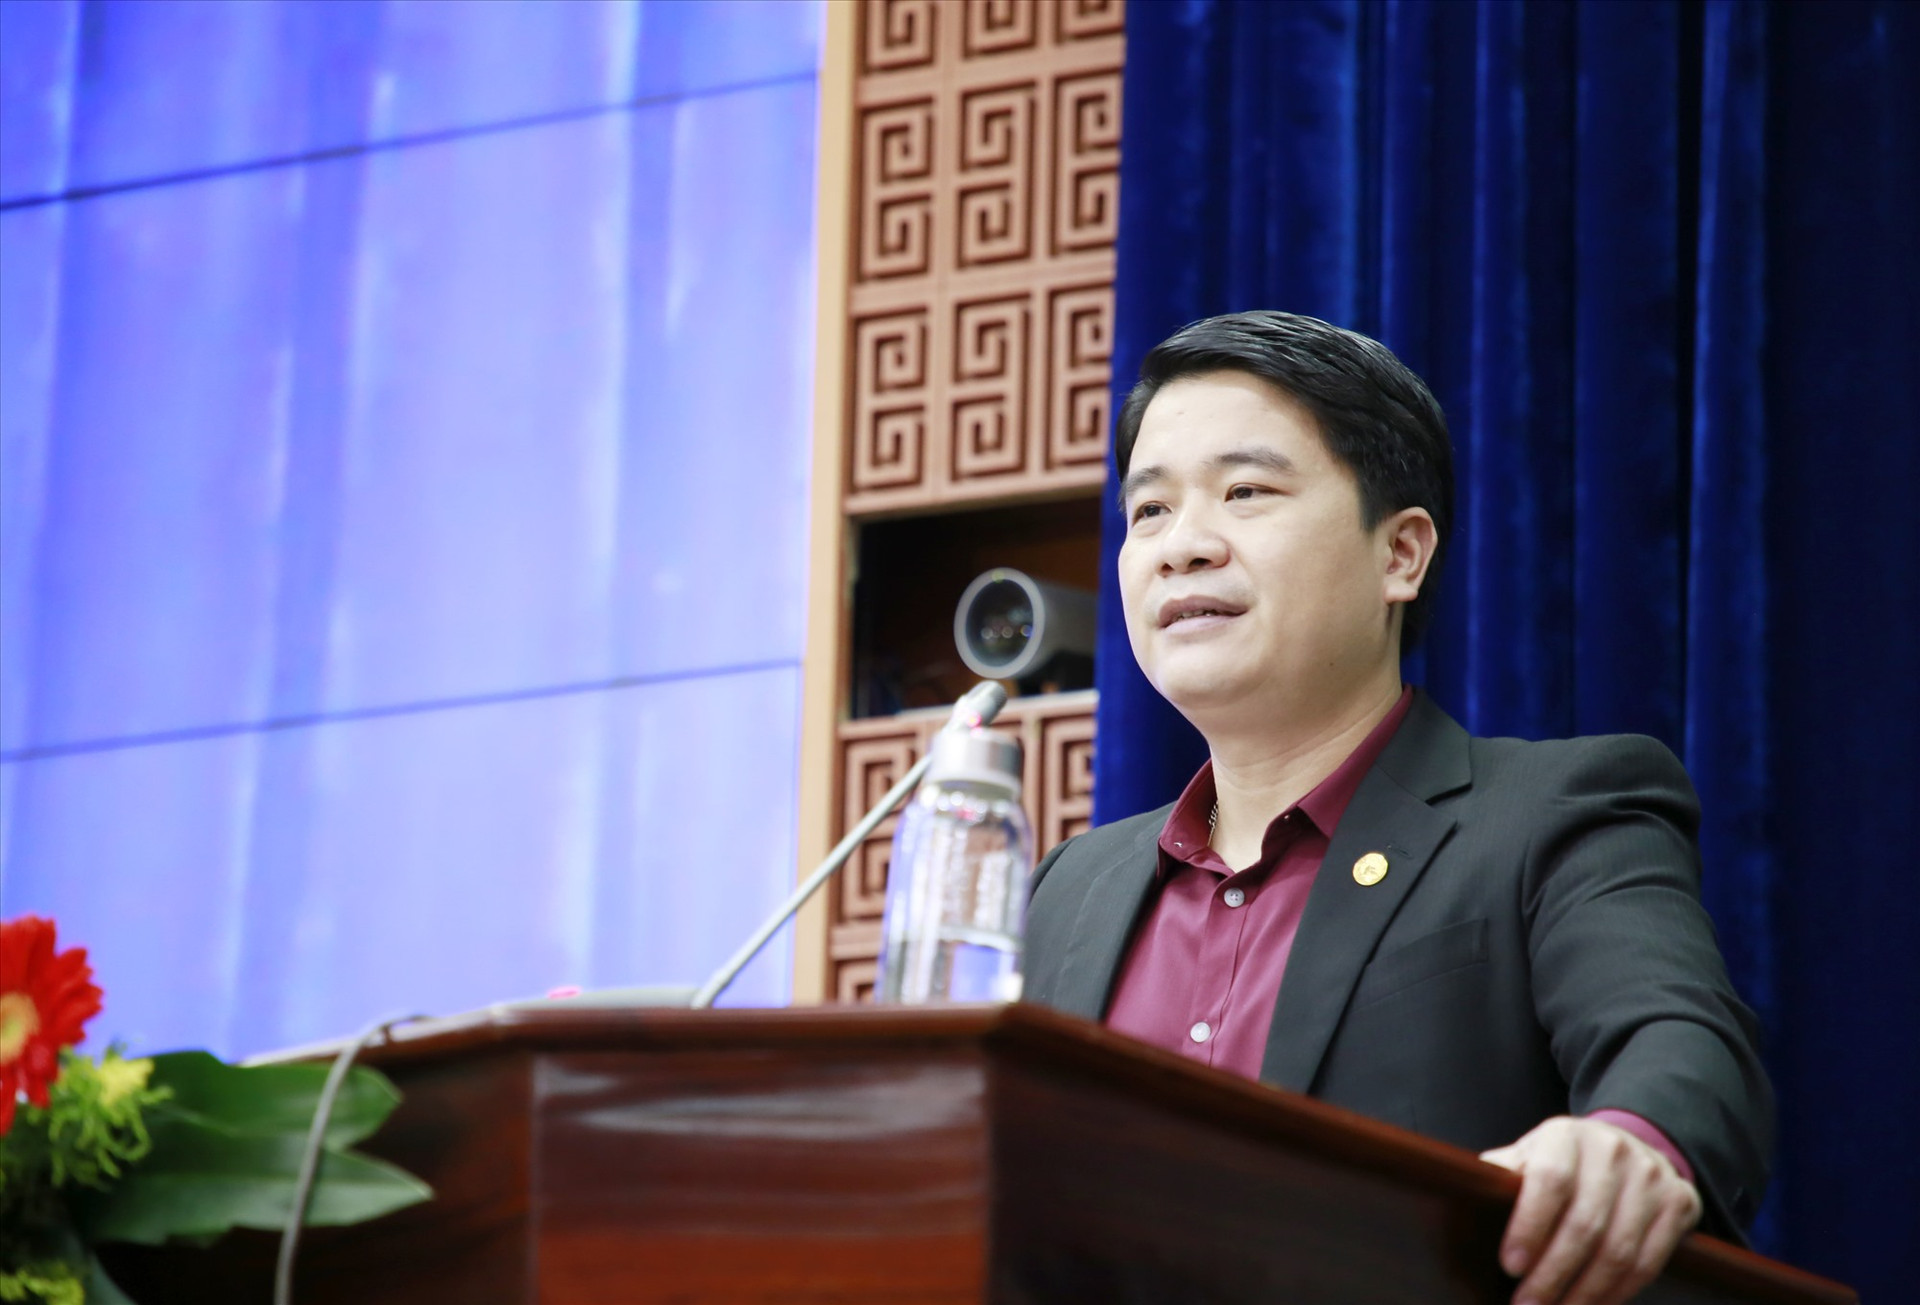 Phó Chủ tịch UBND tỉnh Trần Văn Tân yêu cầu tăng cường thanh, kiểm tra, xử lý vi phạm lĩnh vực tài nguyên - môi trường. Ảnh: T.C